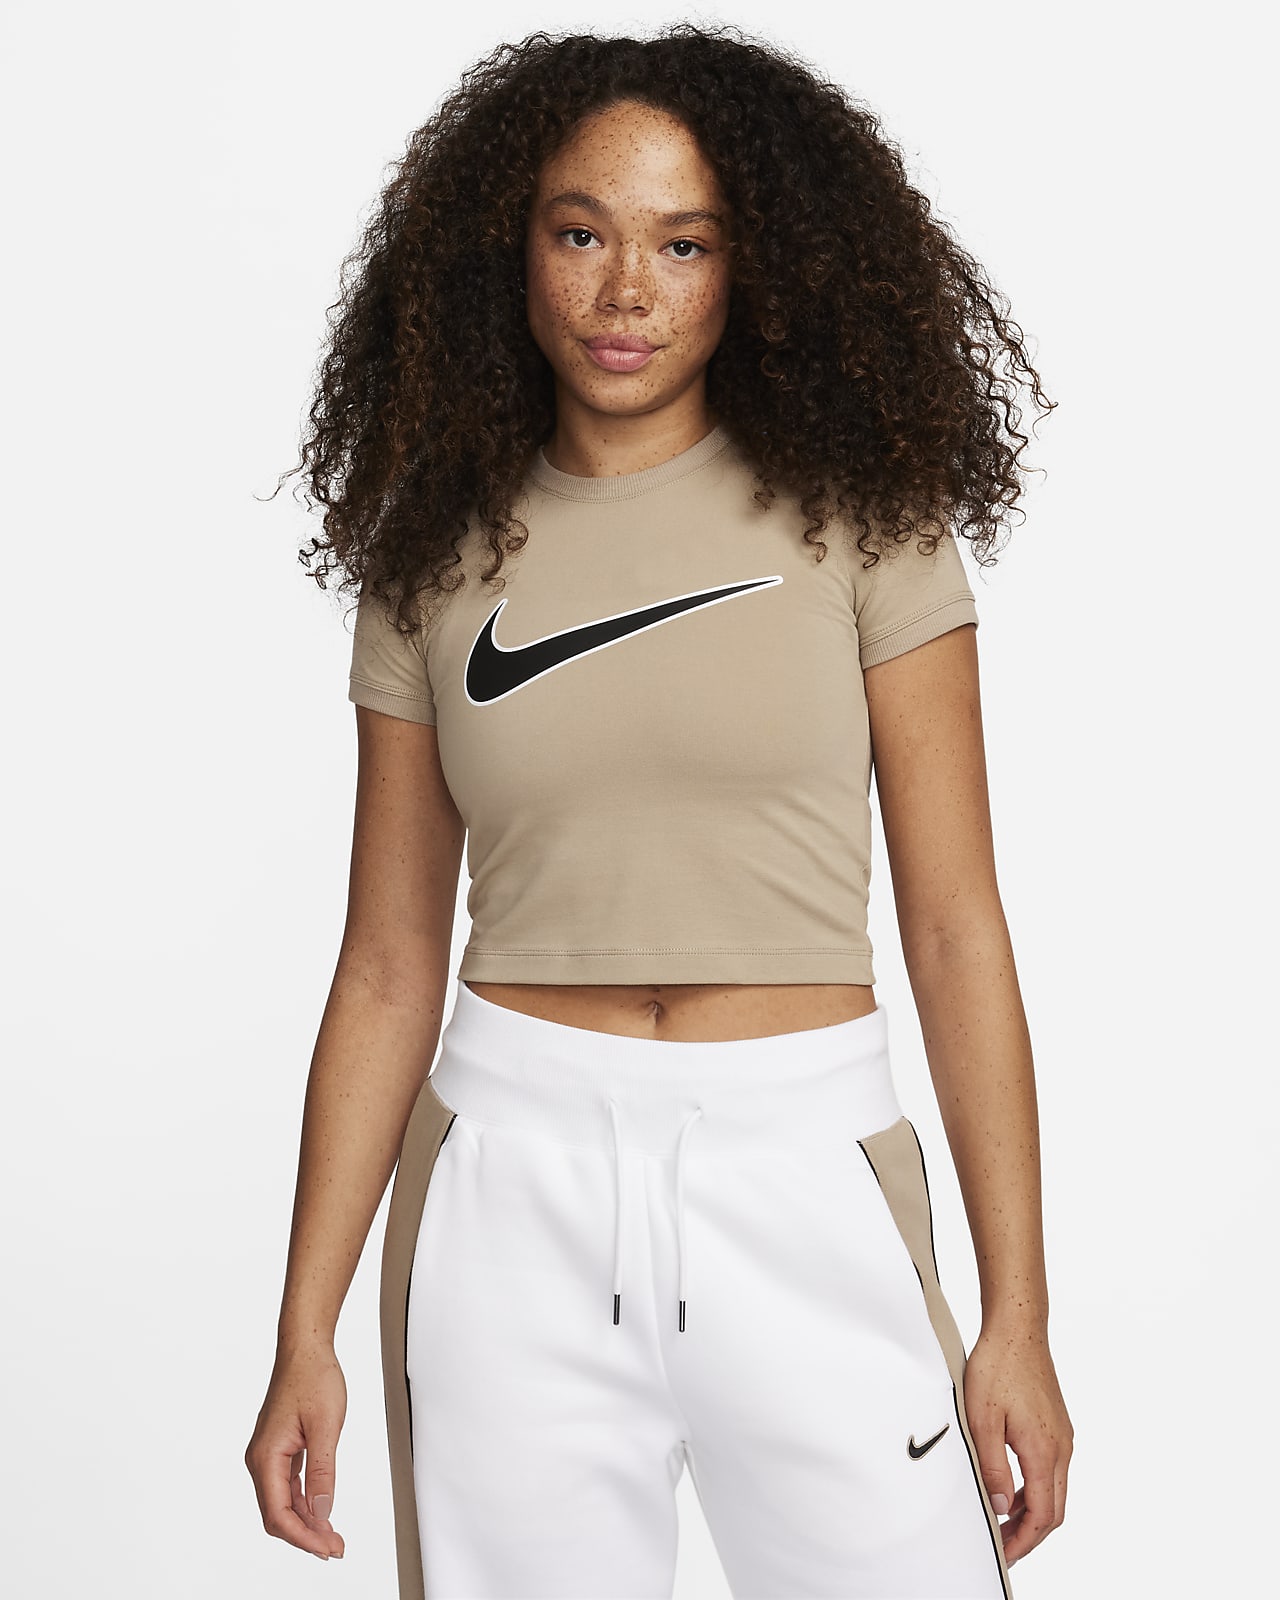 Nike Sportswear Women's Cropped T-Shirt. Nike HR